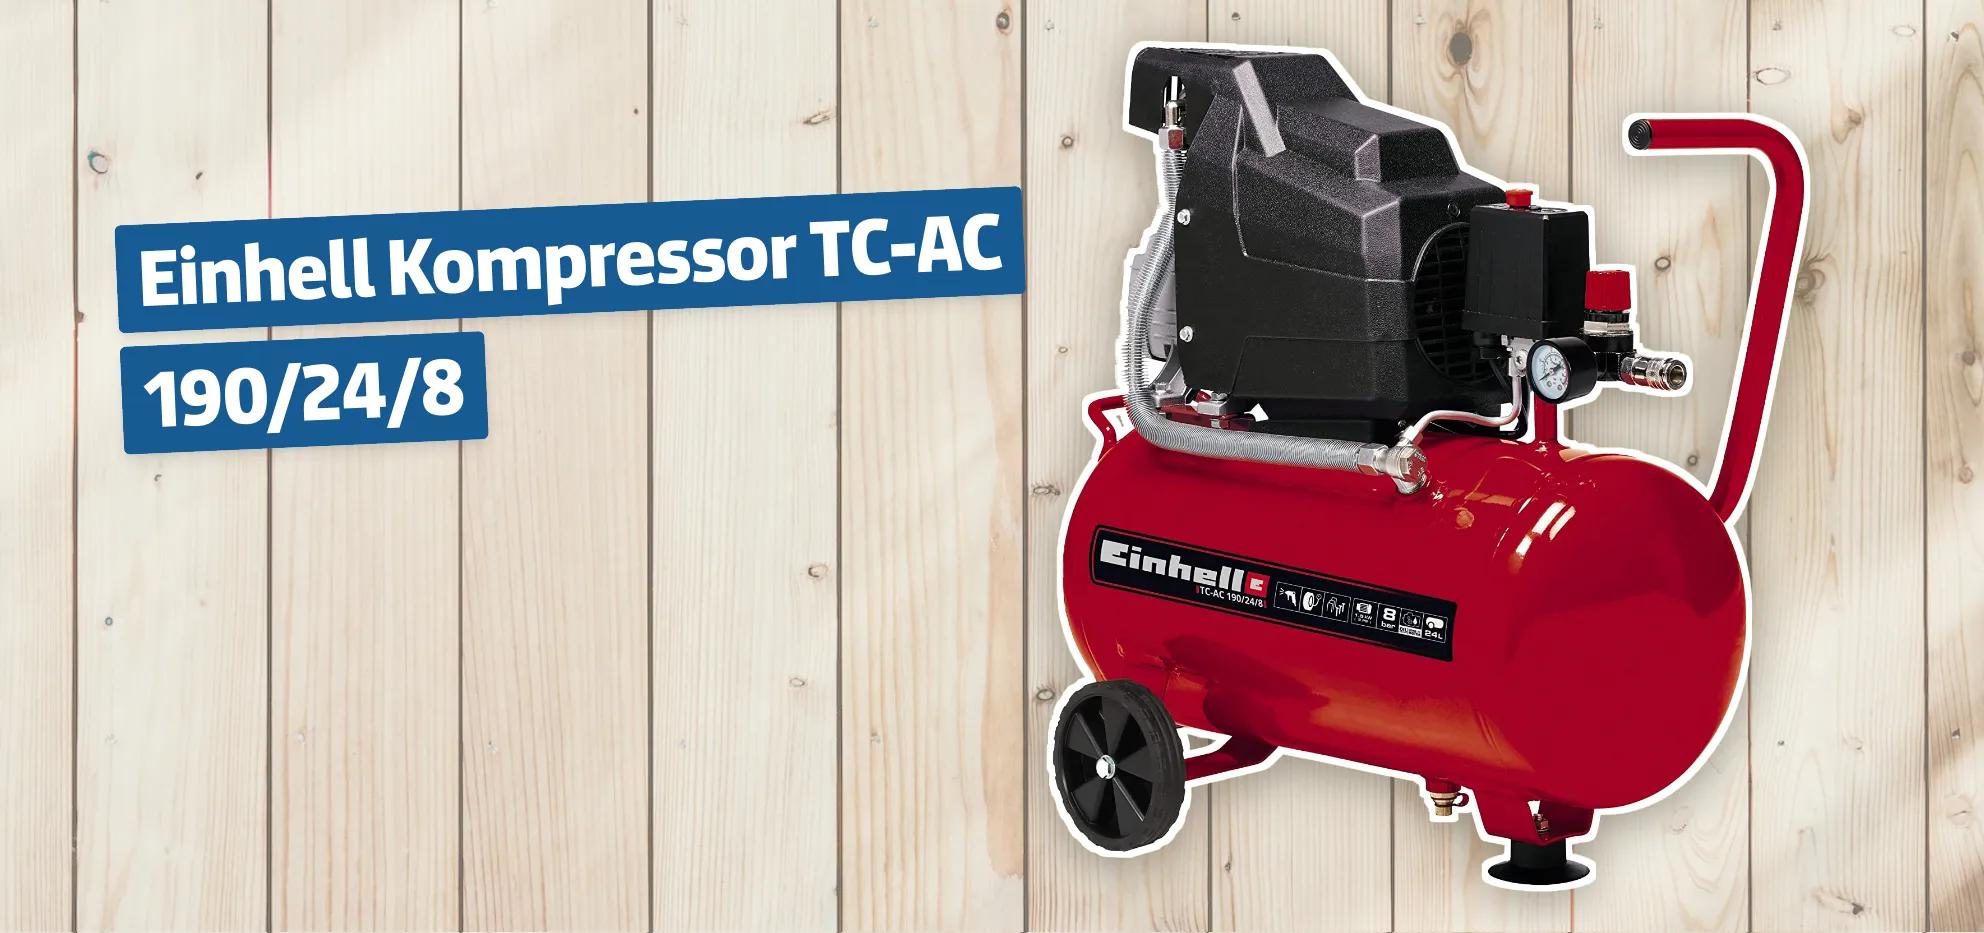 Einhell Kompressor TC-AC 190/24/8